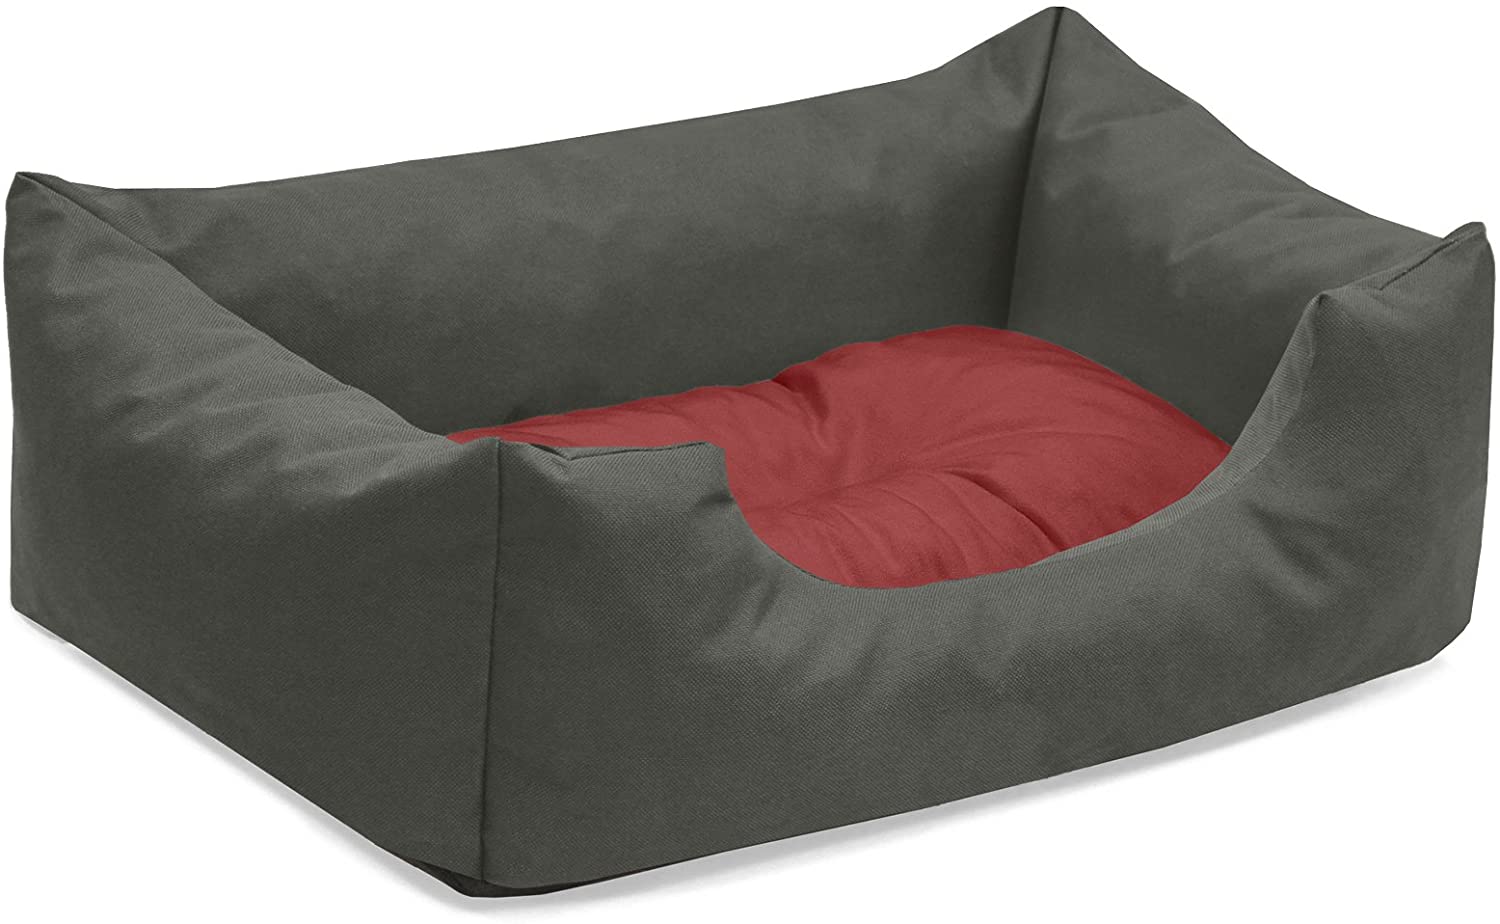  BedDog® colchón para Perro Mimi S hasta XXXL, 26 Colores, Cama, sofá, Cesta para Perro, XL Gris/Verde 